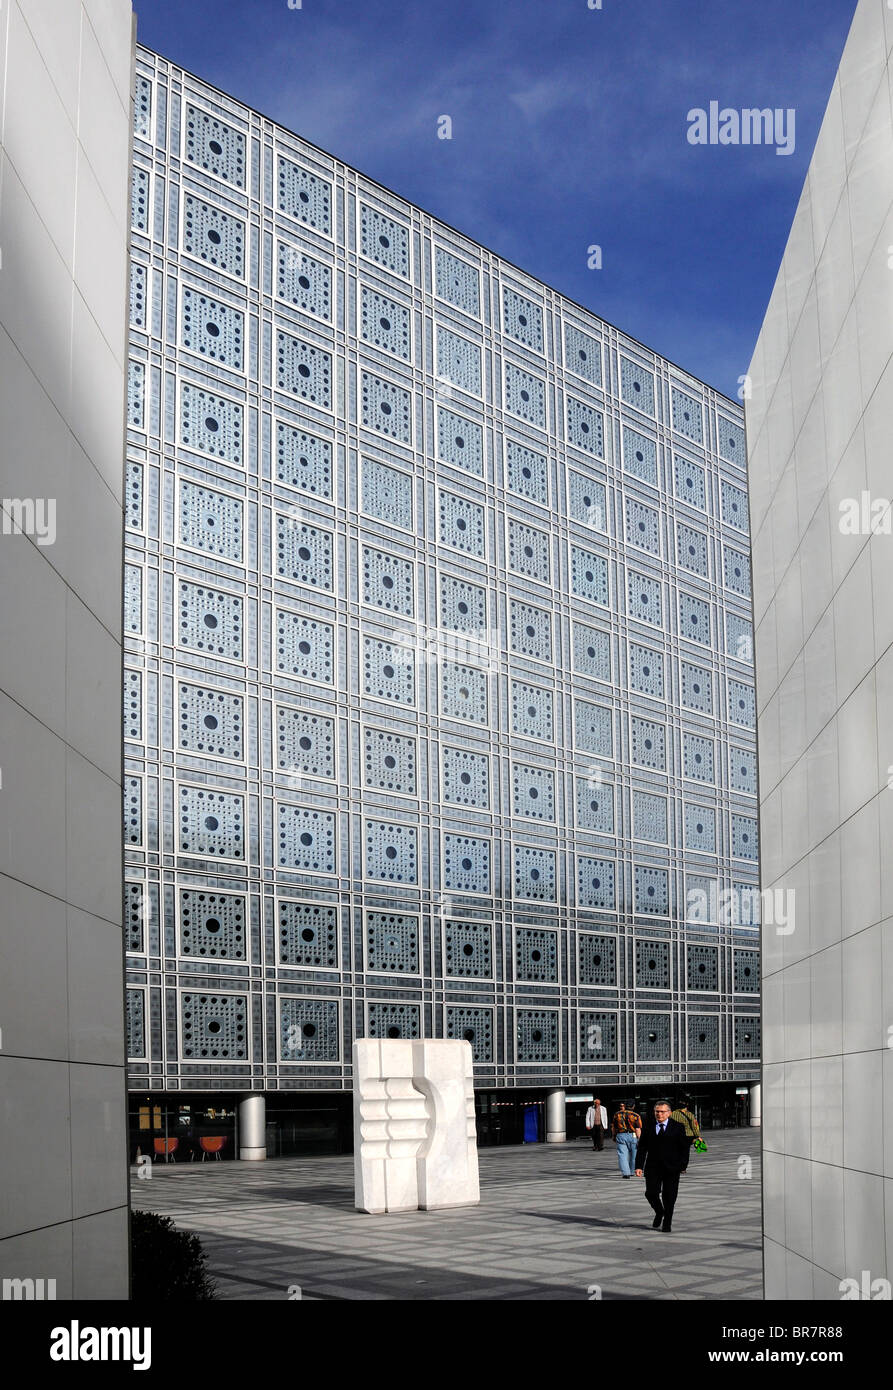 Die Fassade des Gebäudes hosting "Institut du Monde Arabe" (IMA), Top arabischen Kulturzentrums in Paris, Frankreich. Stockfoto